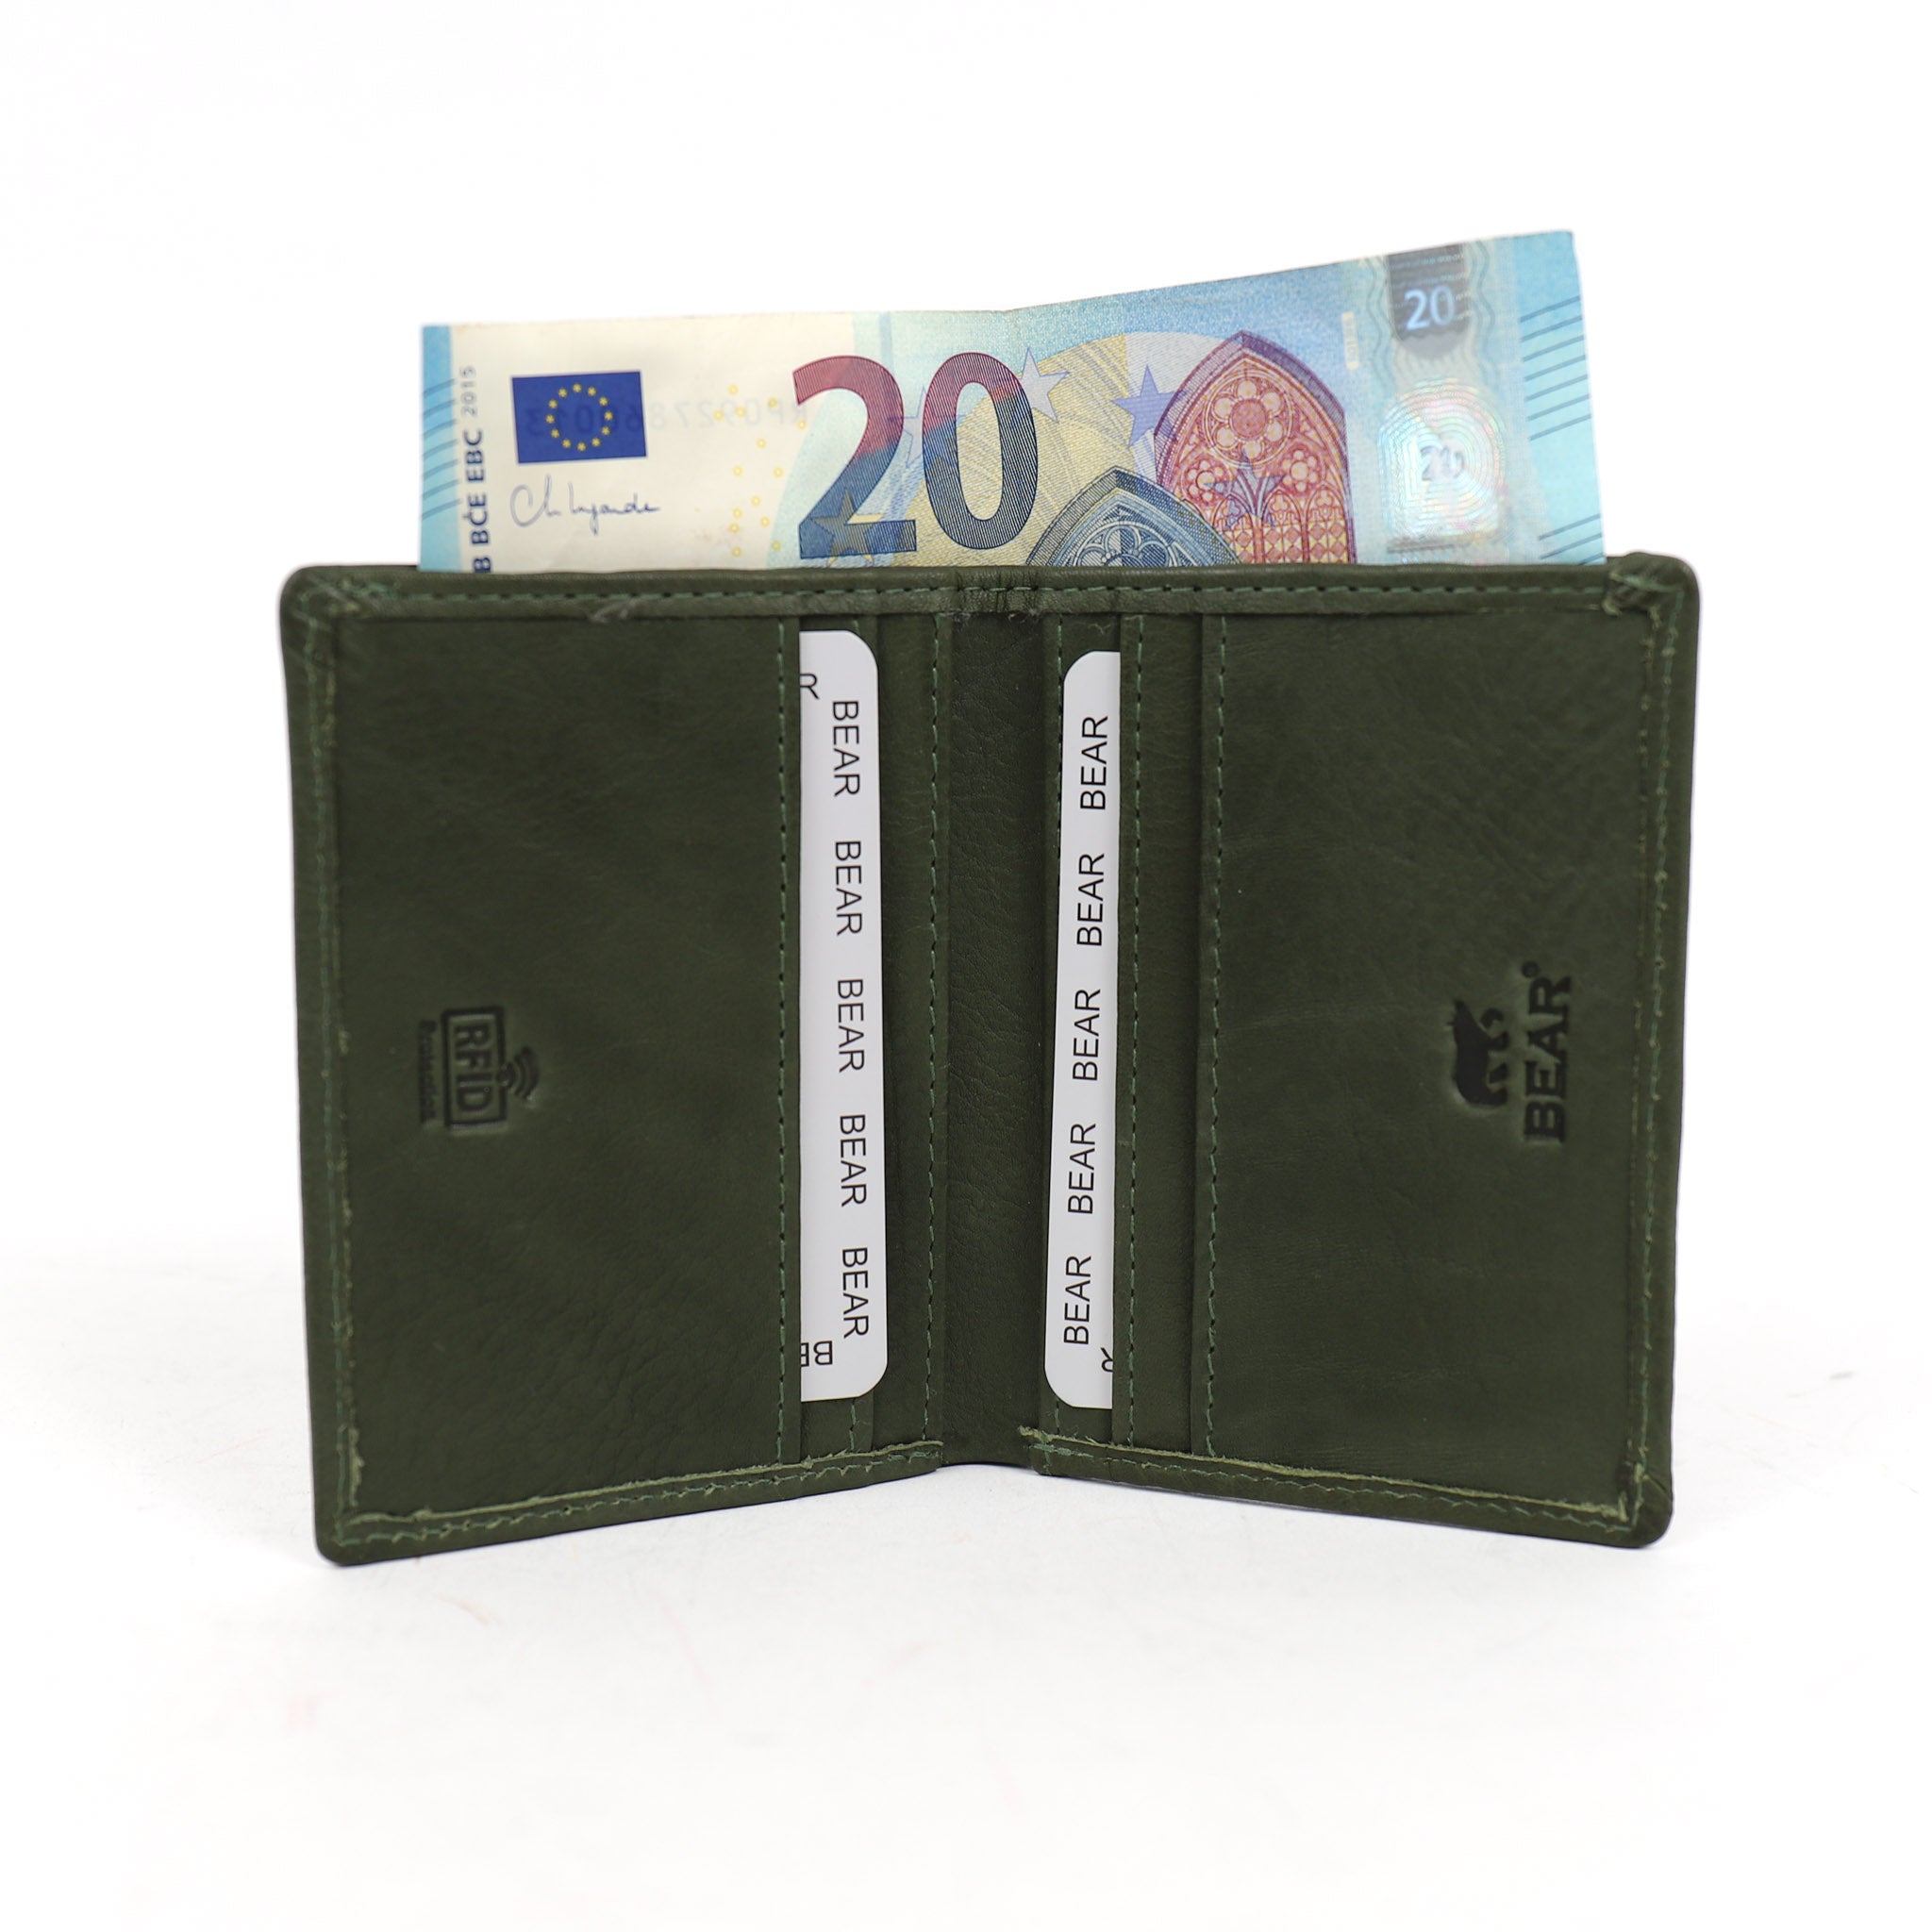 Kartenhalter mit Geldscheinfach 'Cas' Grün